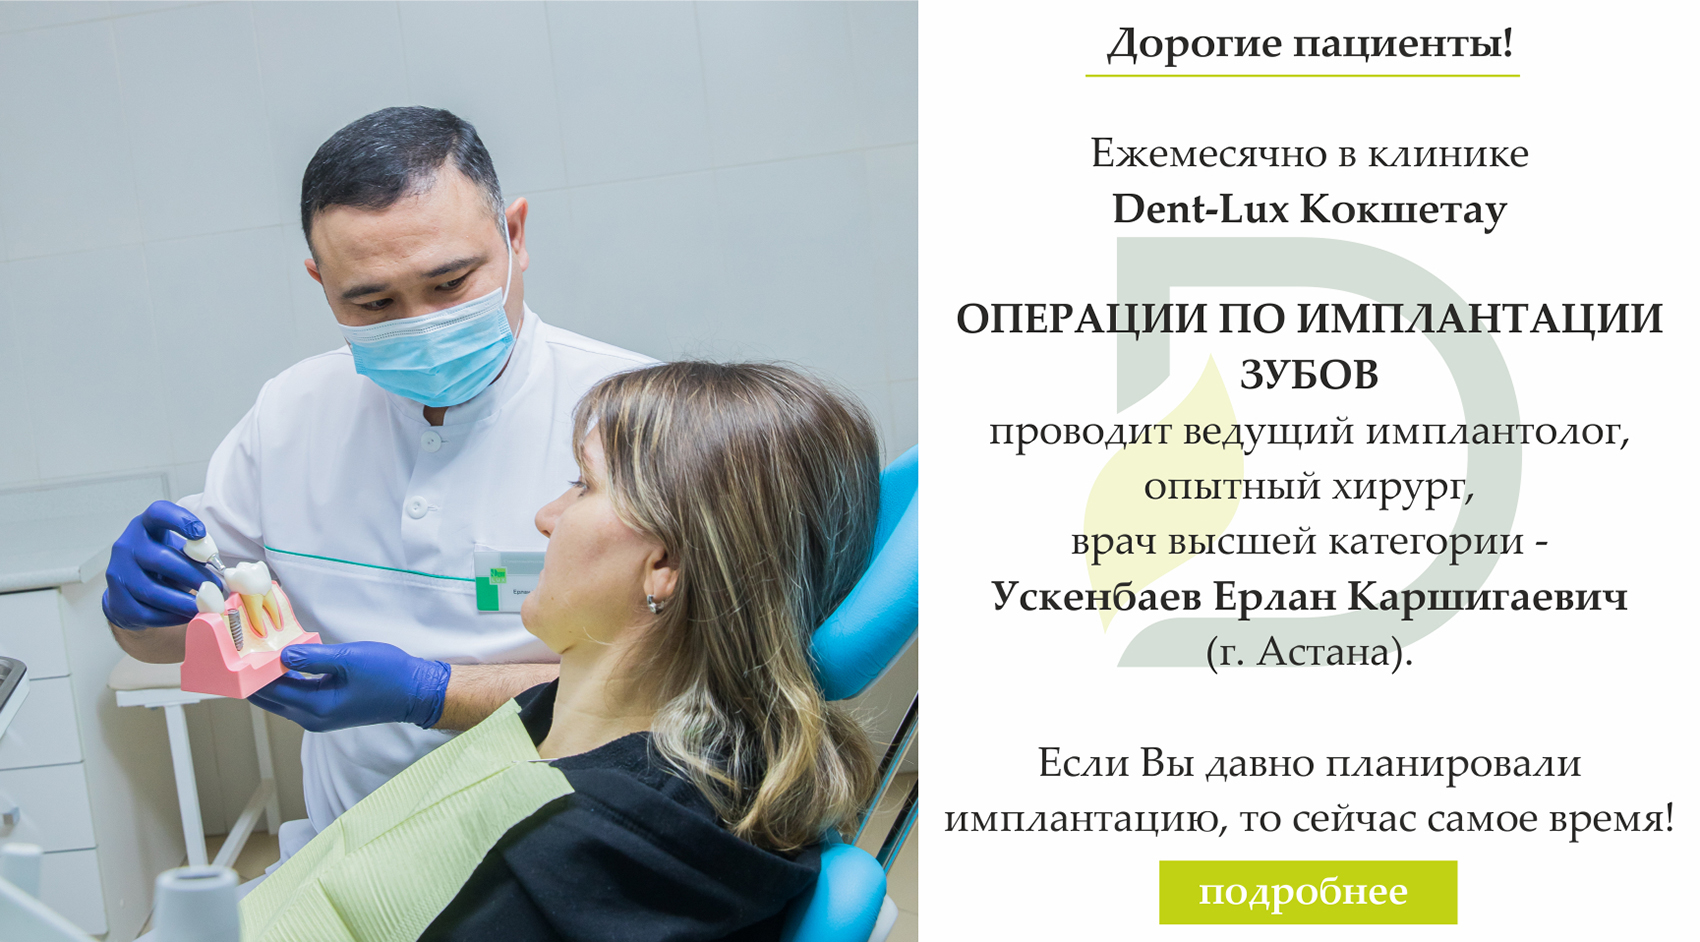 Программы укрепления зубов кальцием и фтором в Казахстане, фото 4